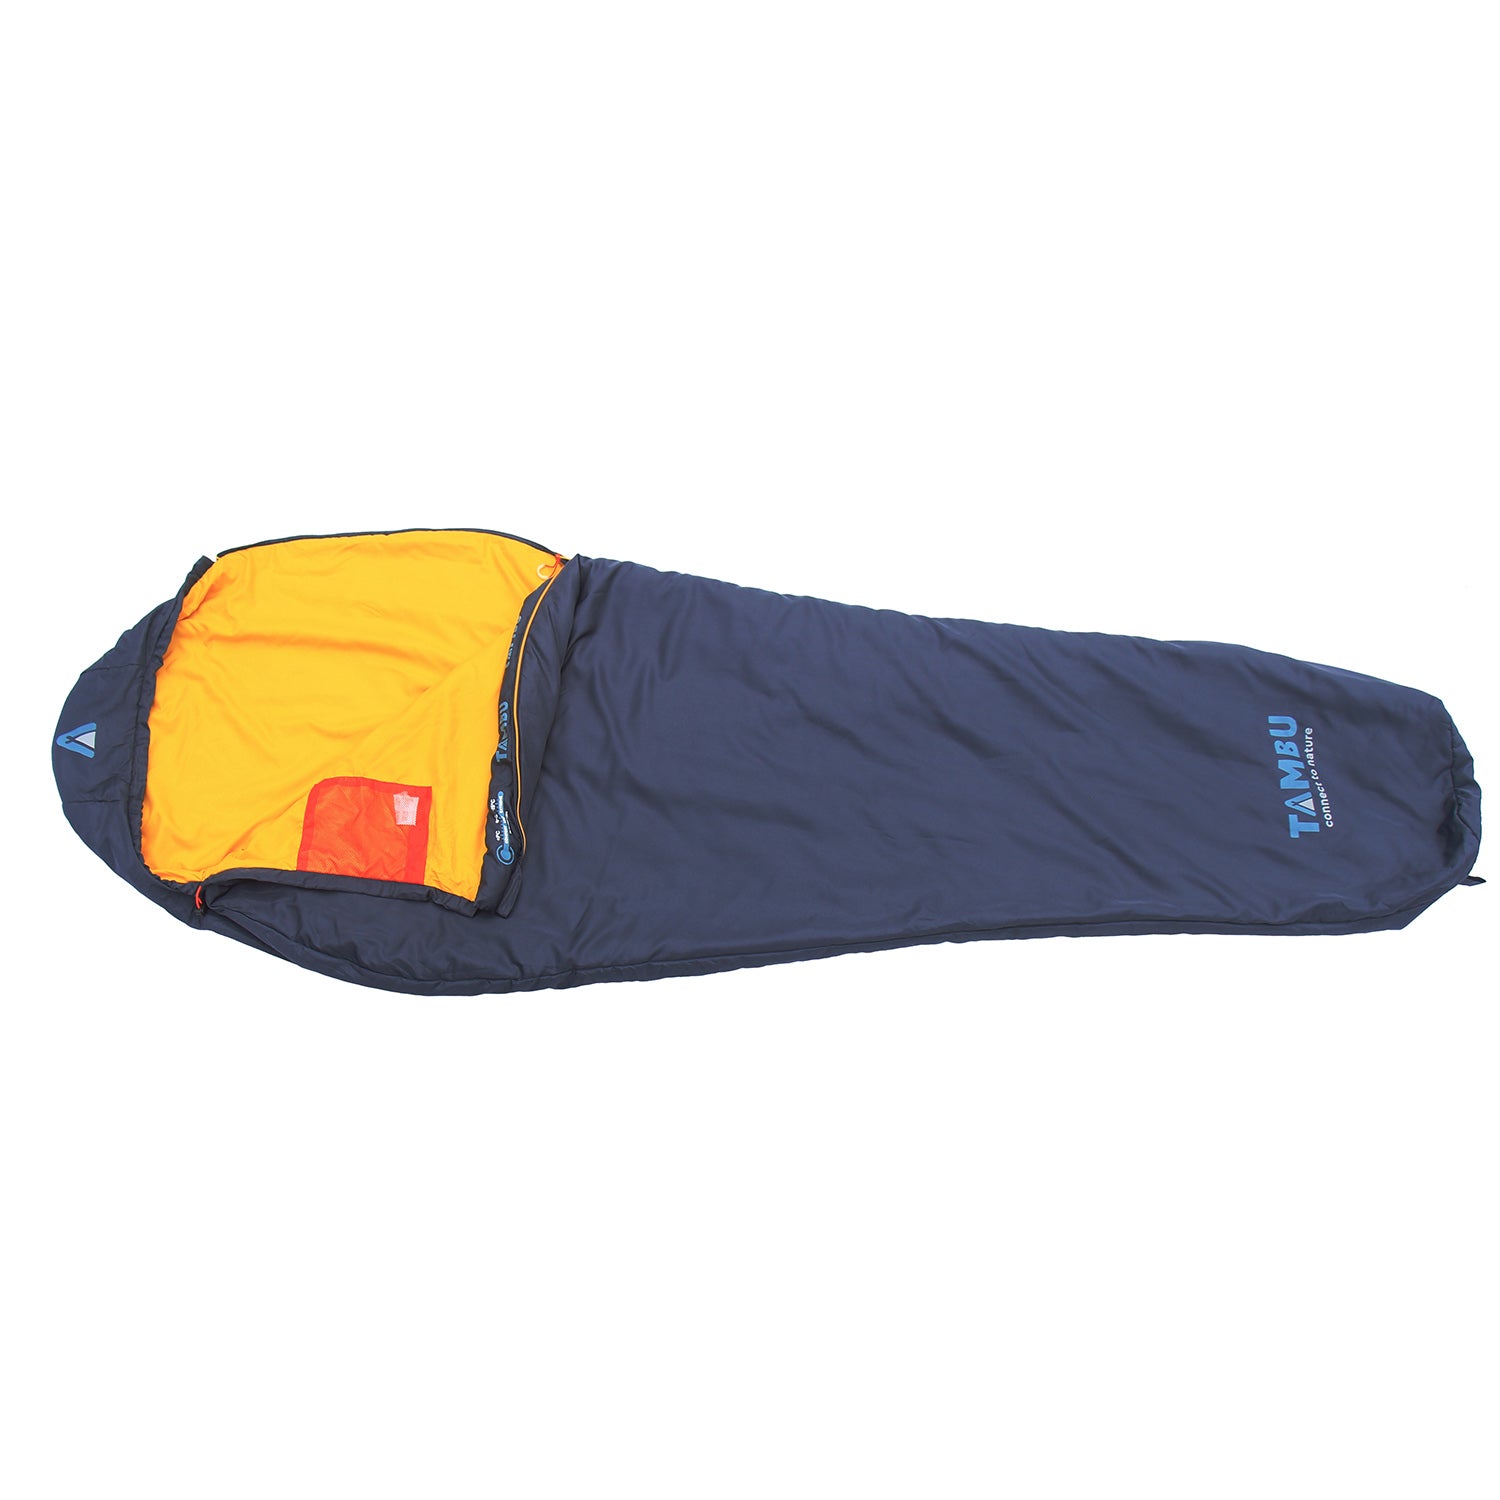 NEEL | mummy sleeping bag 750 gr